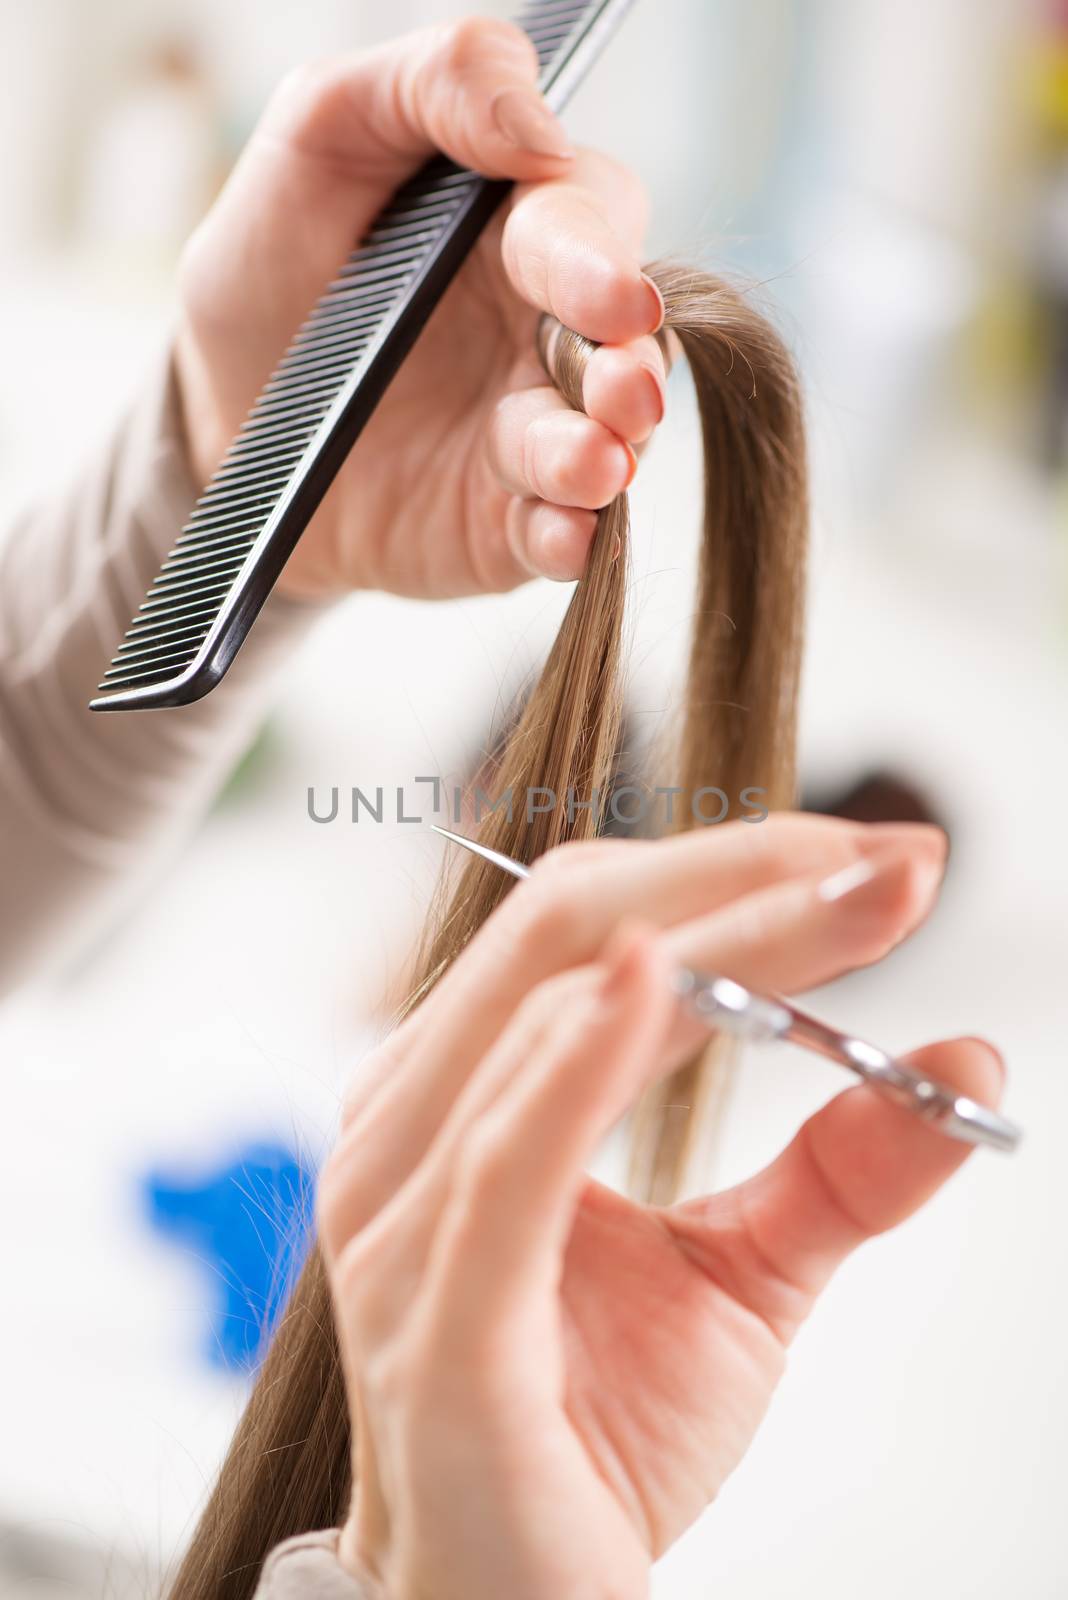 Hair Cutting by MilanMarkovic78